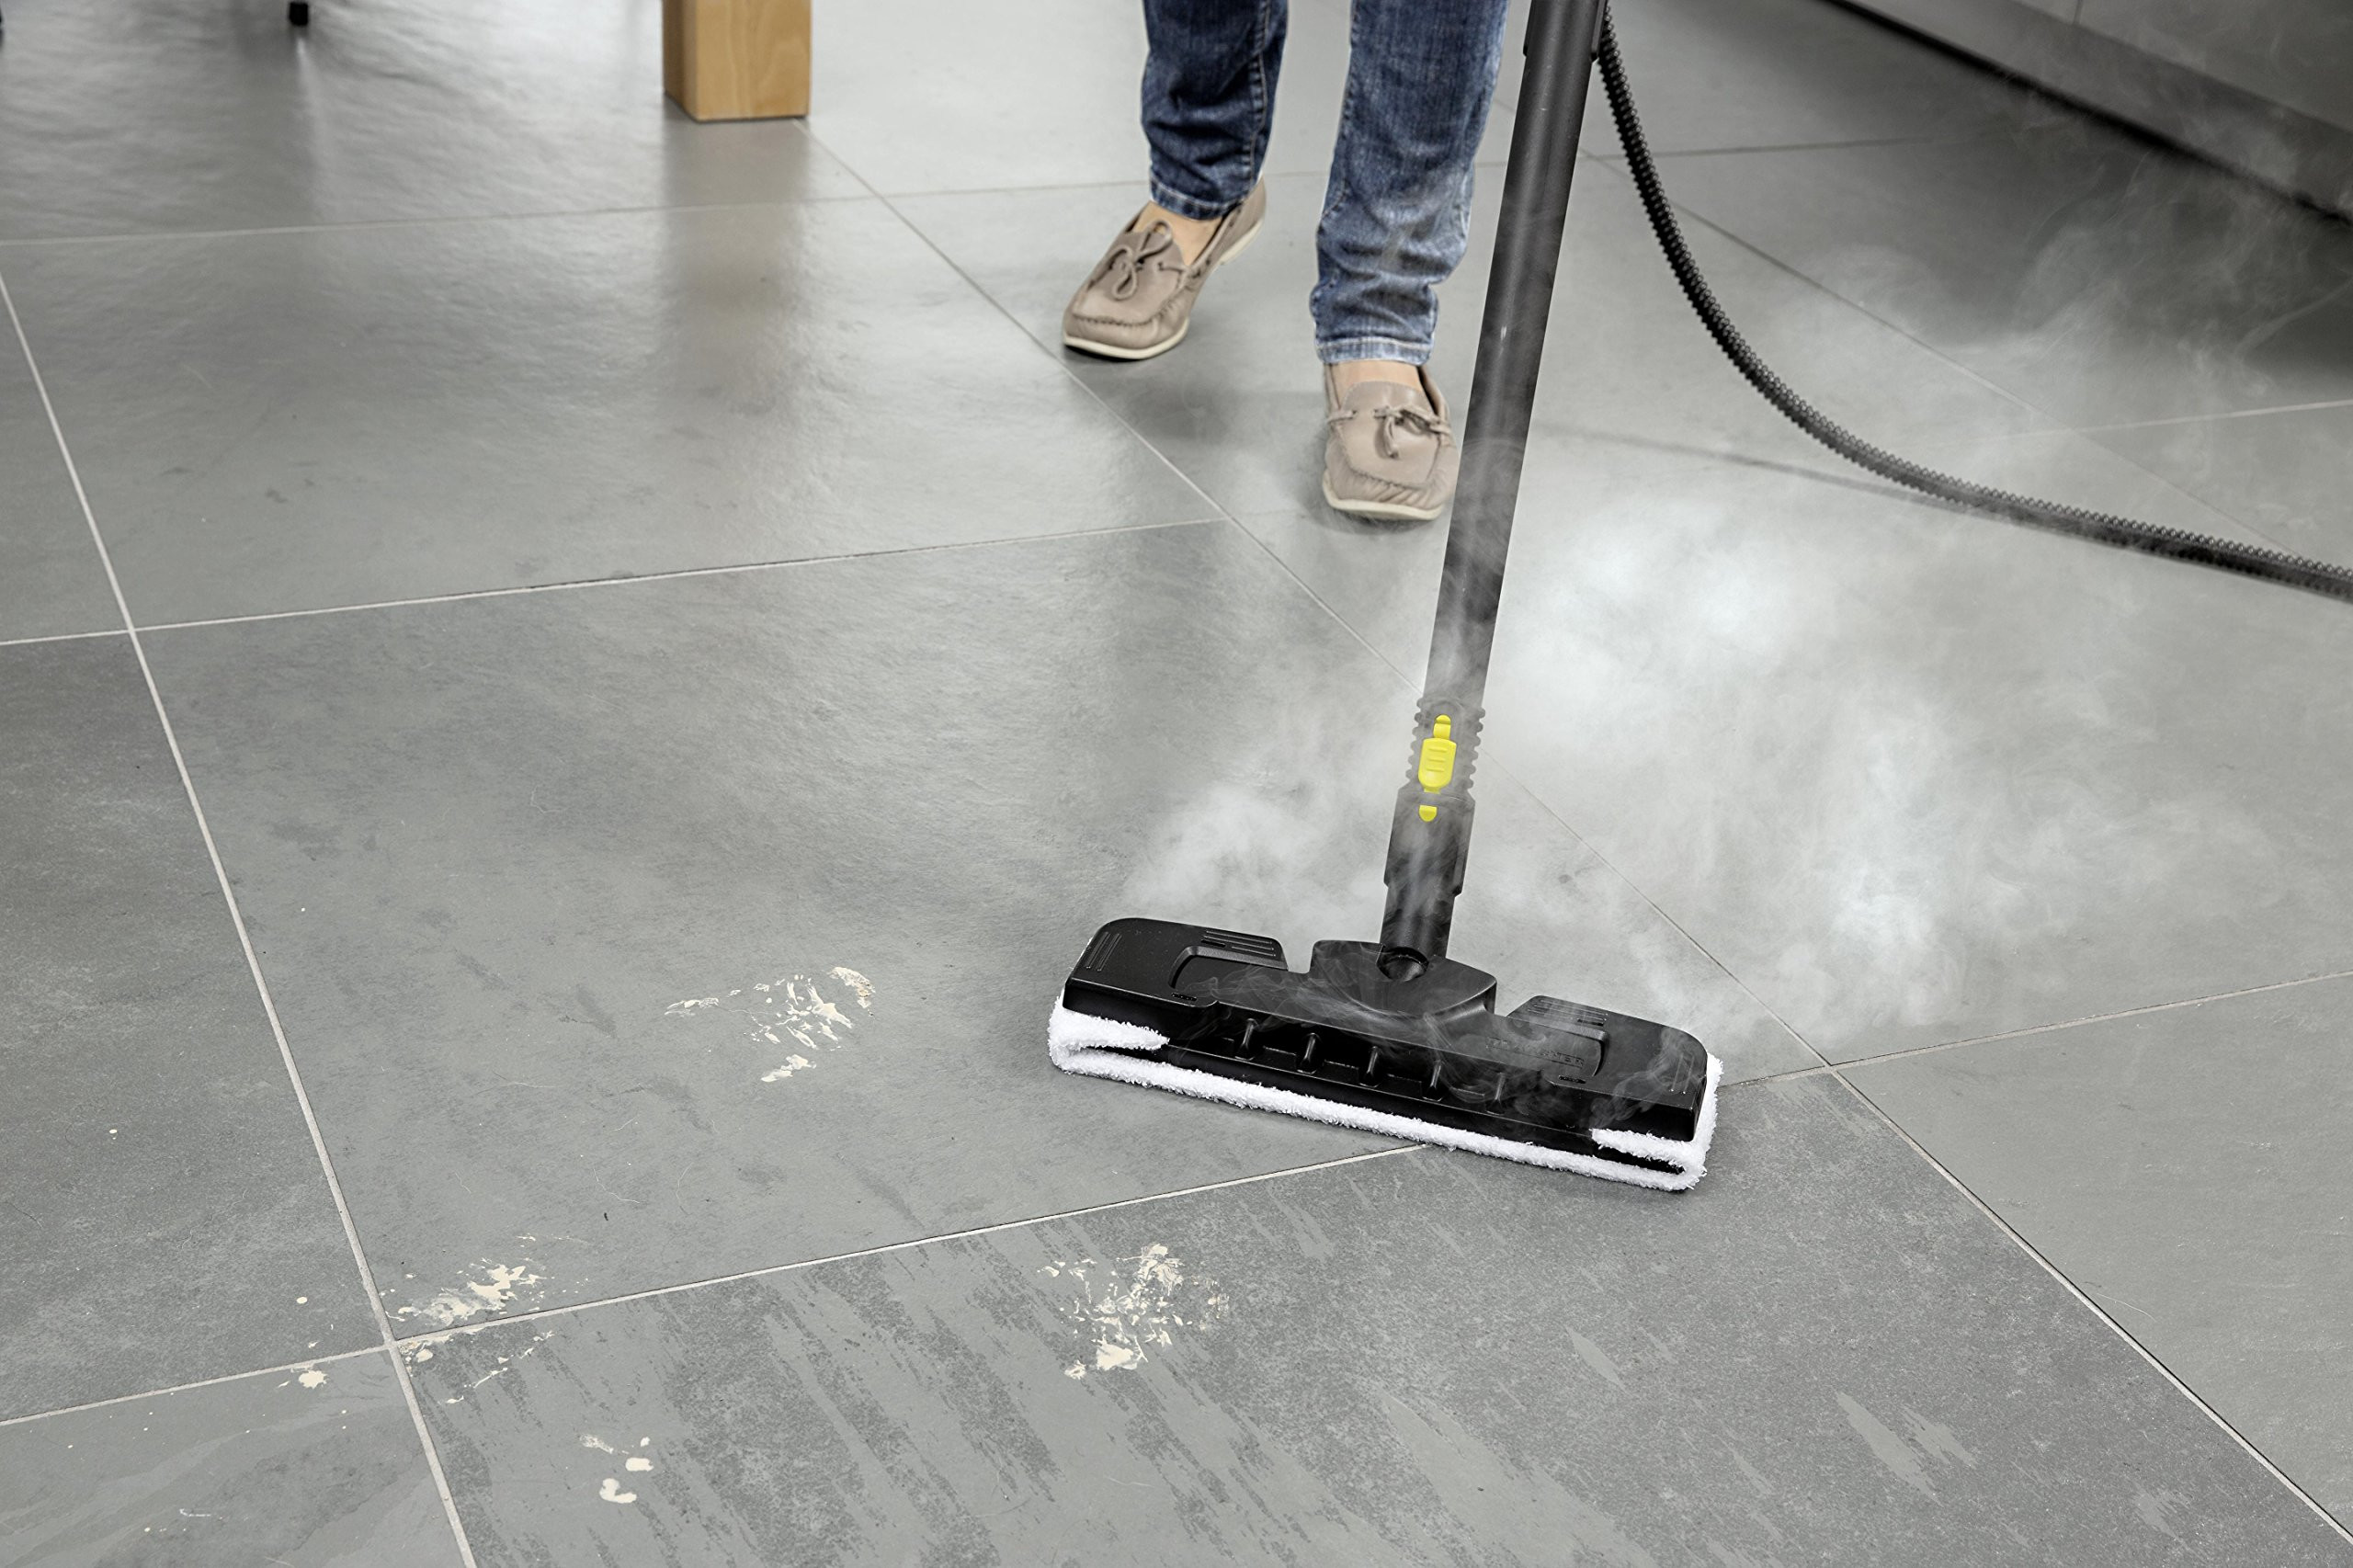 shark steam mop hardwood floor cleaner of vacuum and floor care shop amazon uk regarding steam steam cleaners